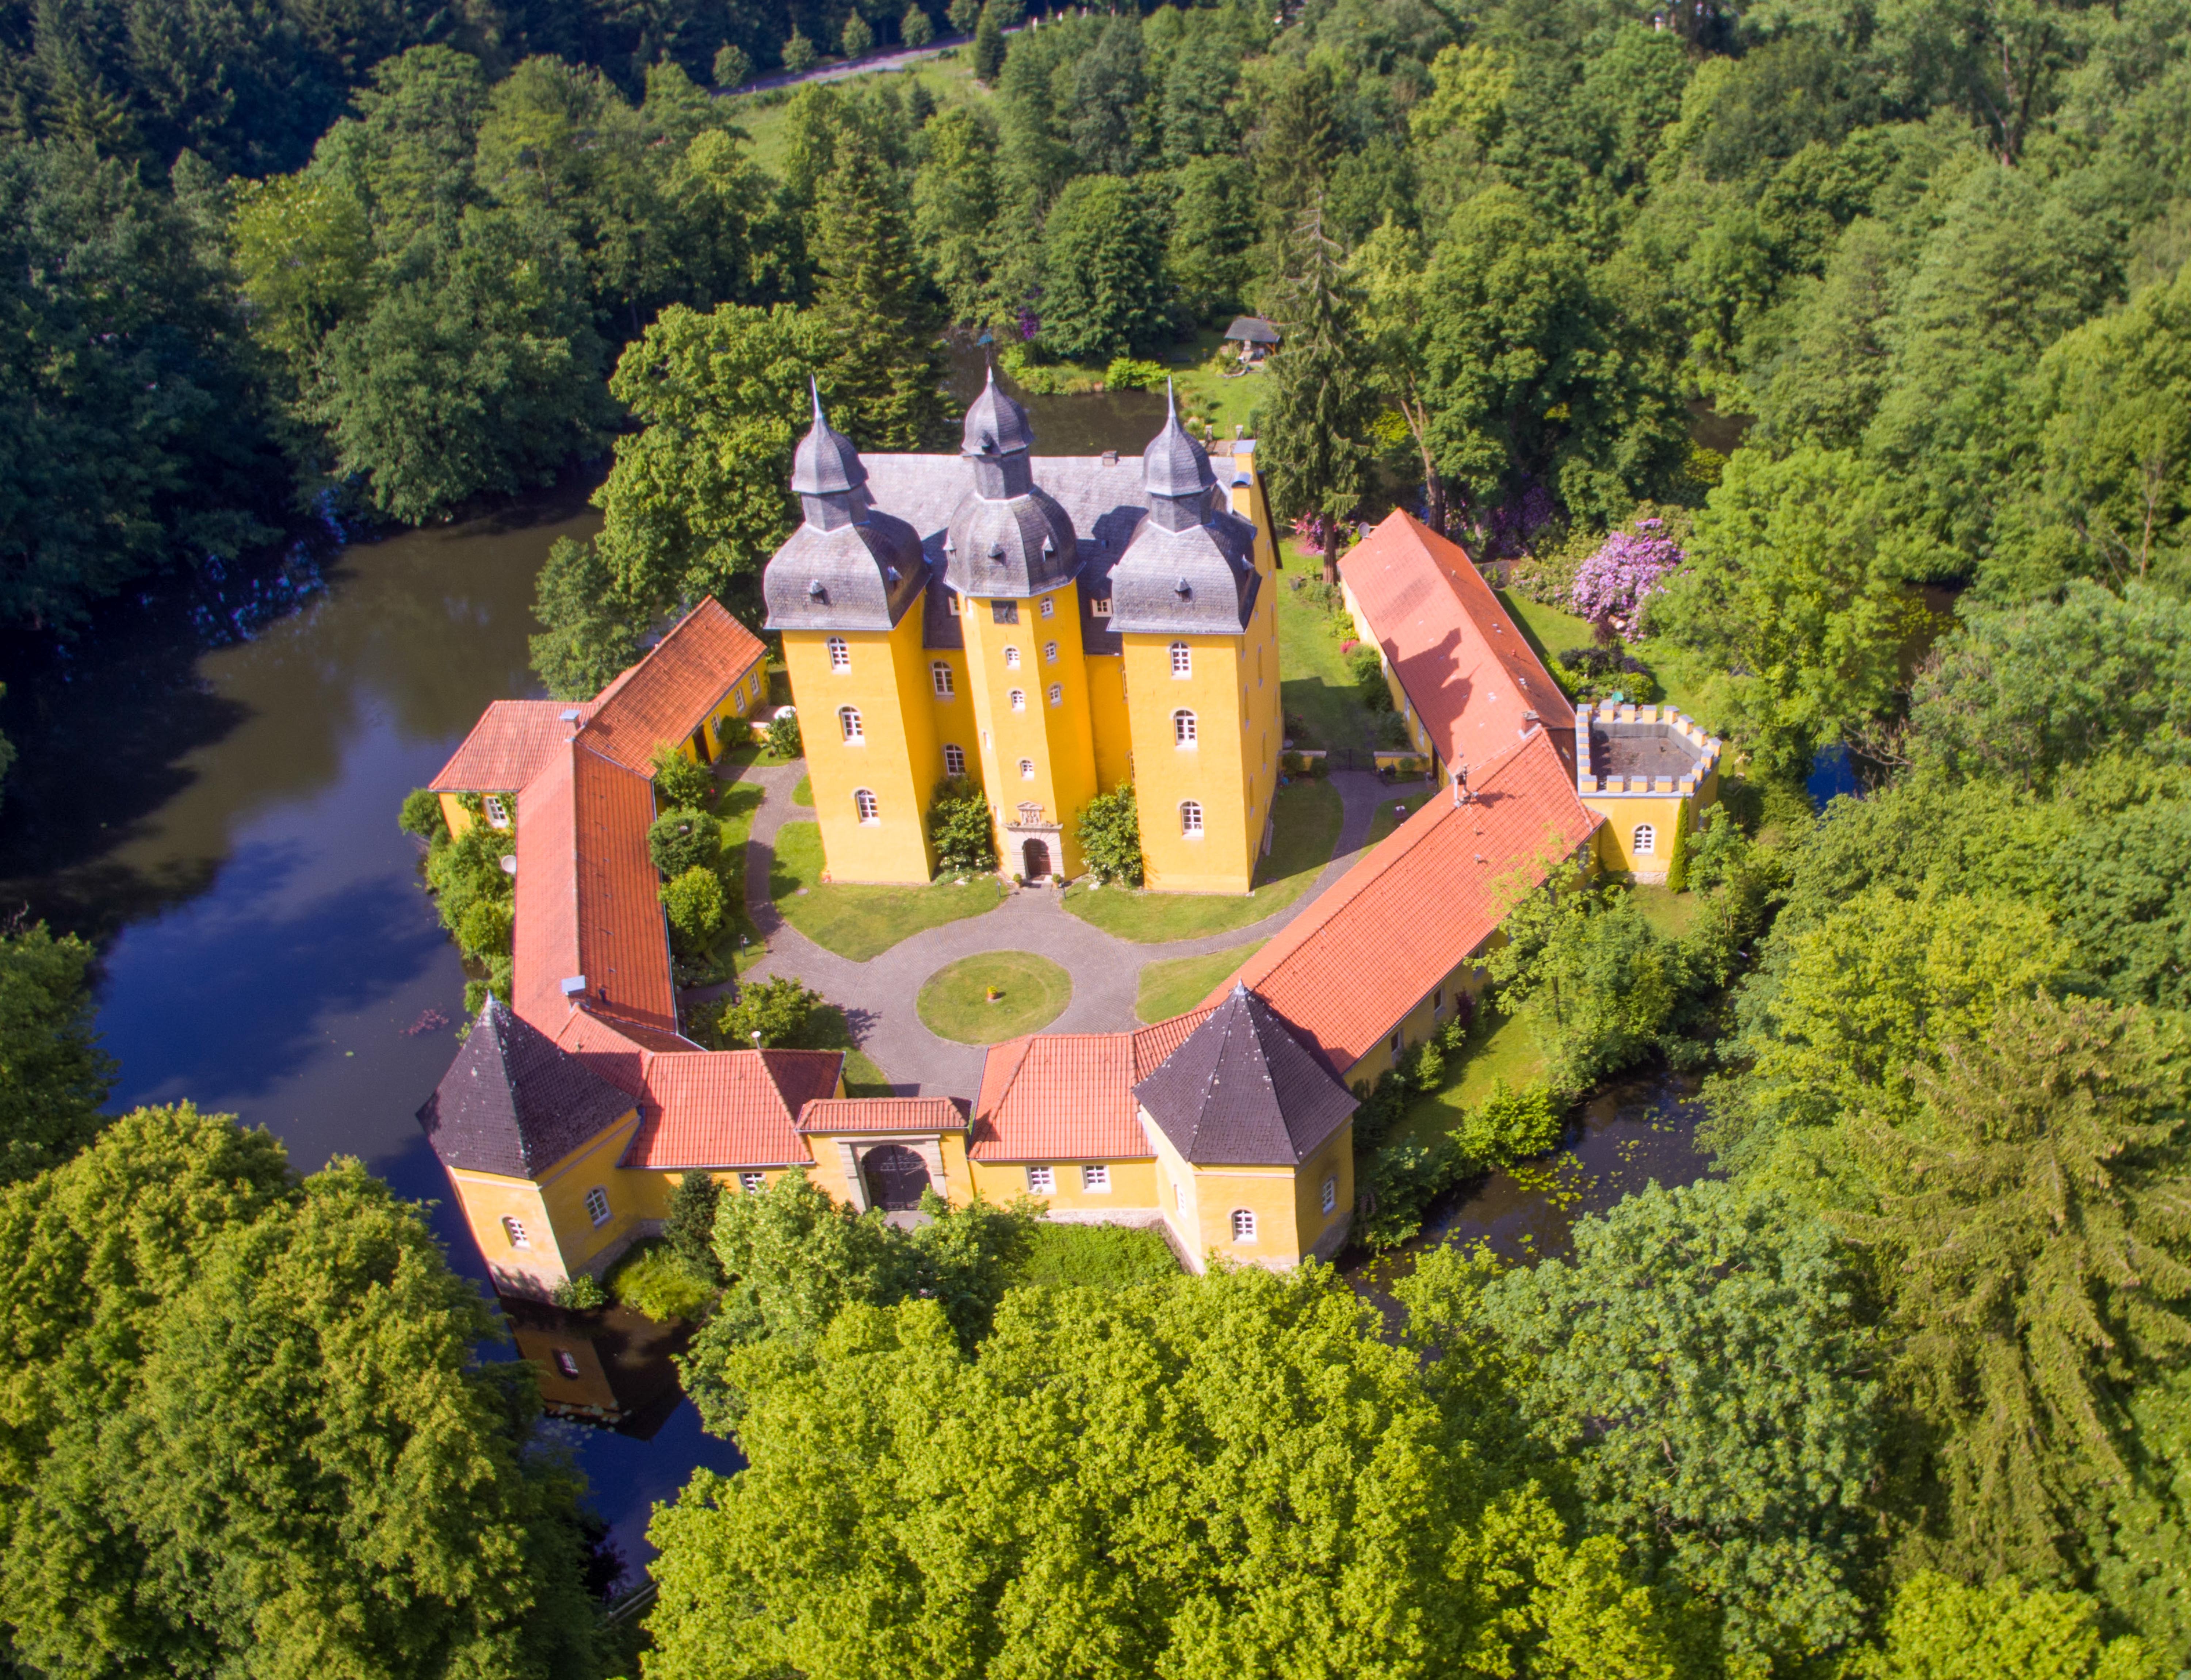 Luftbild vom Jagdschloss Holte in Schloß Holte-Stukenbrock, Foto: Fortkord und Dressler